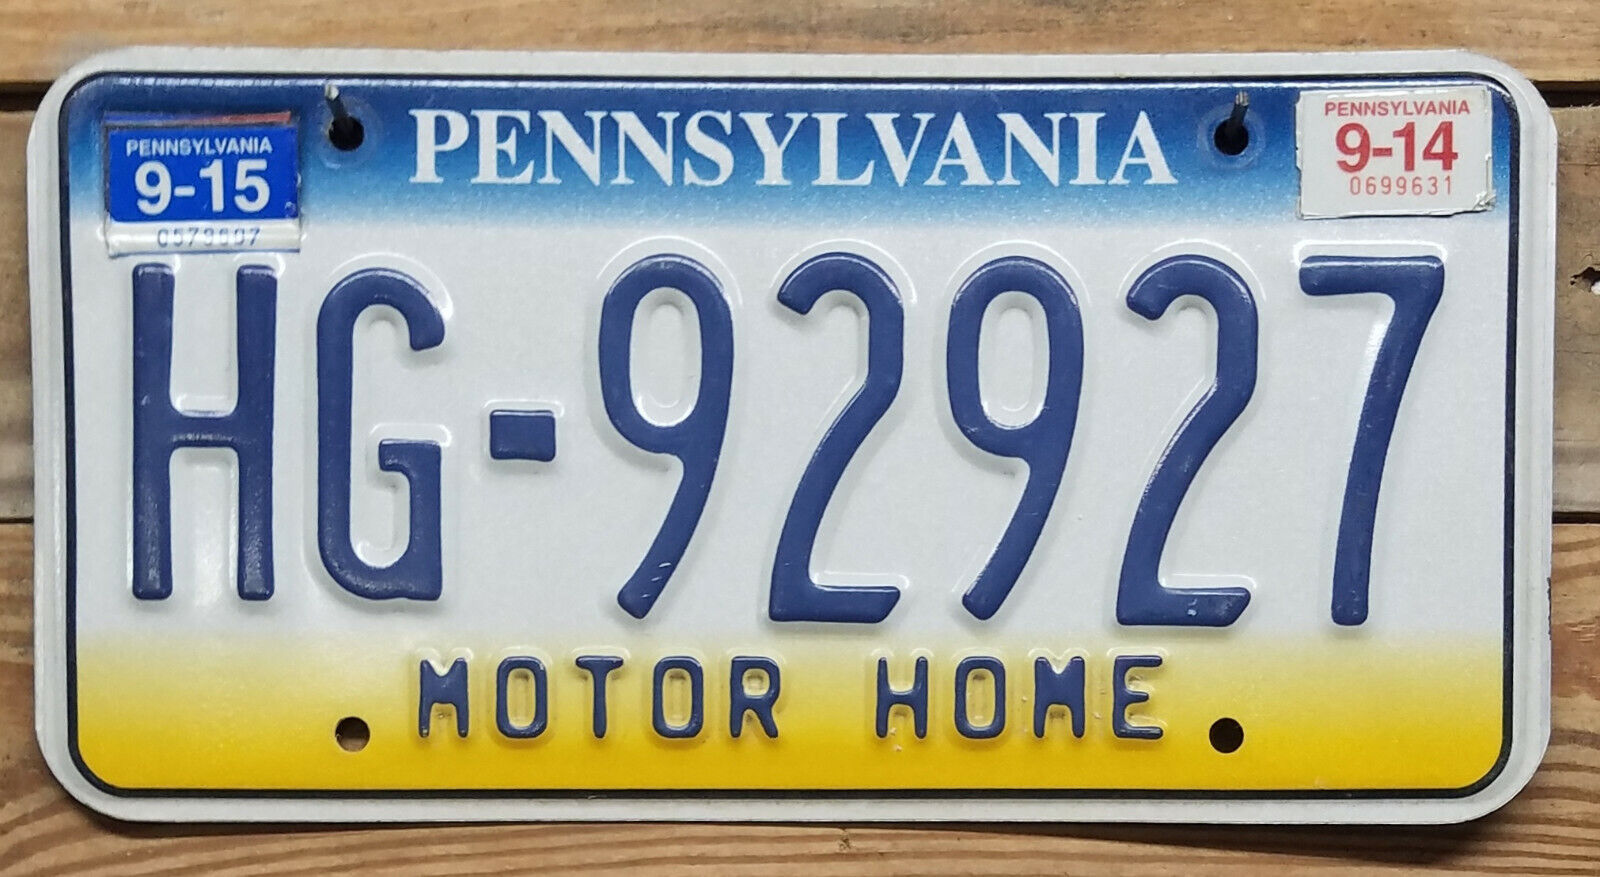 Pennsylvania Expired 2015 MOTOR HOME License Plate ~ HG-92927 ~ Embossed